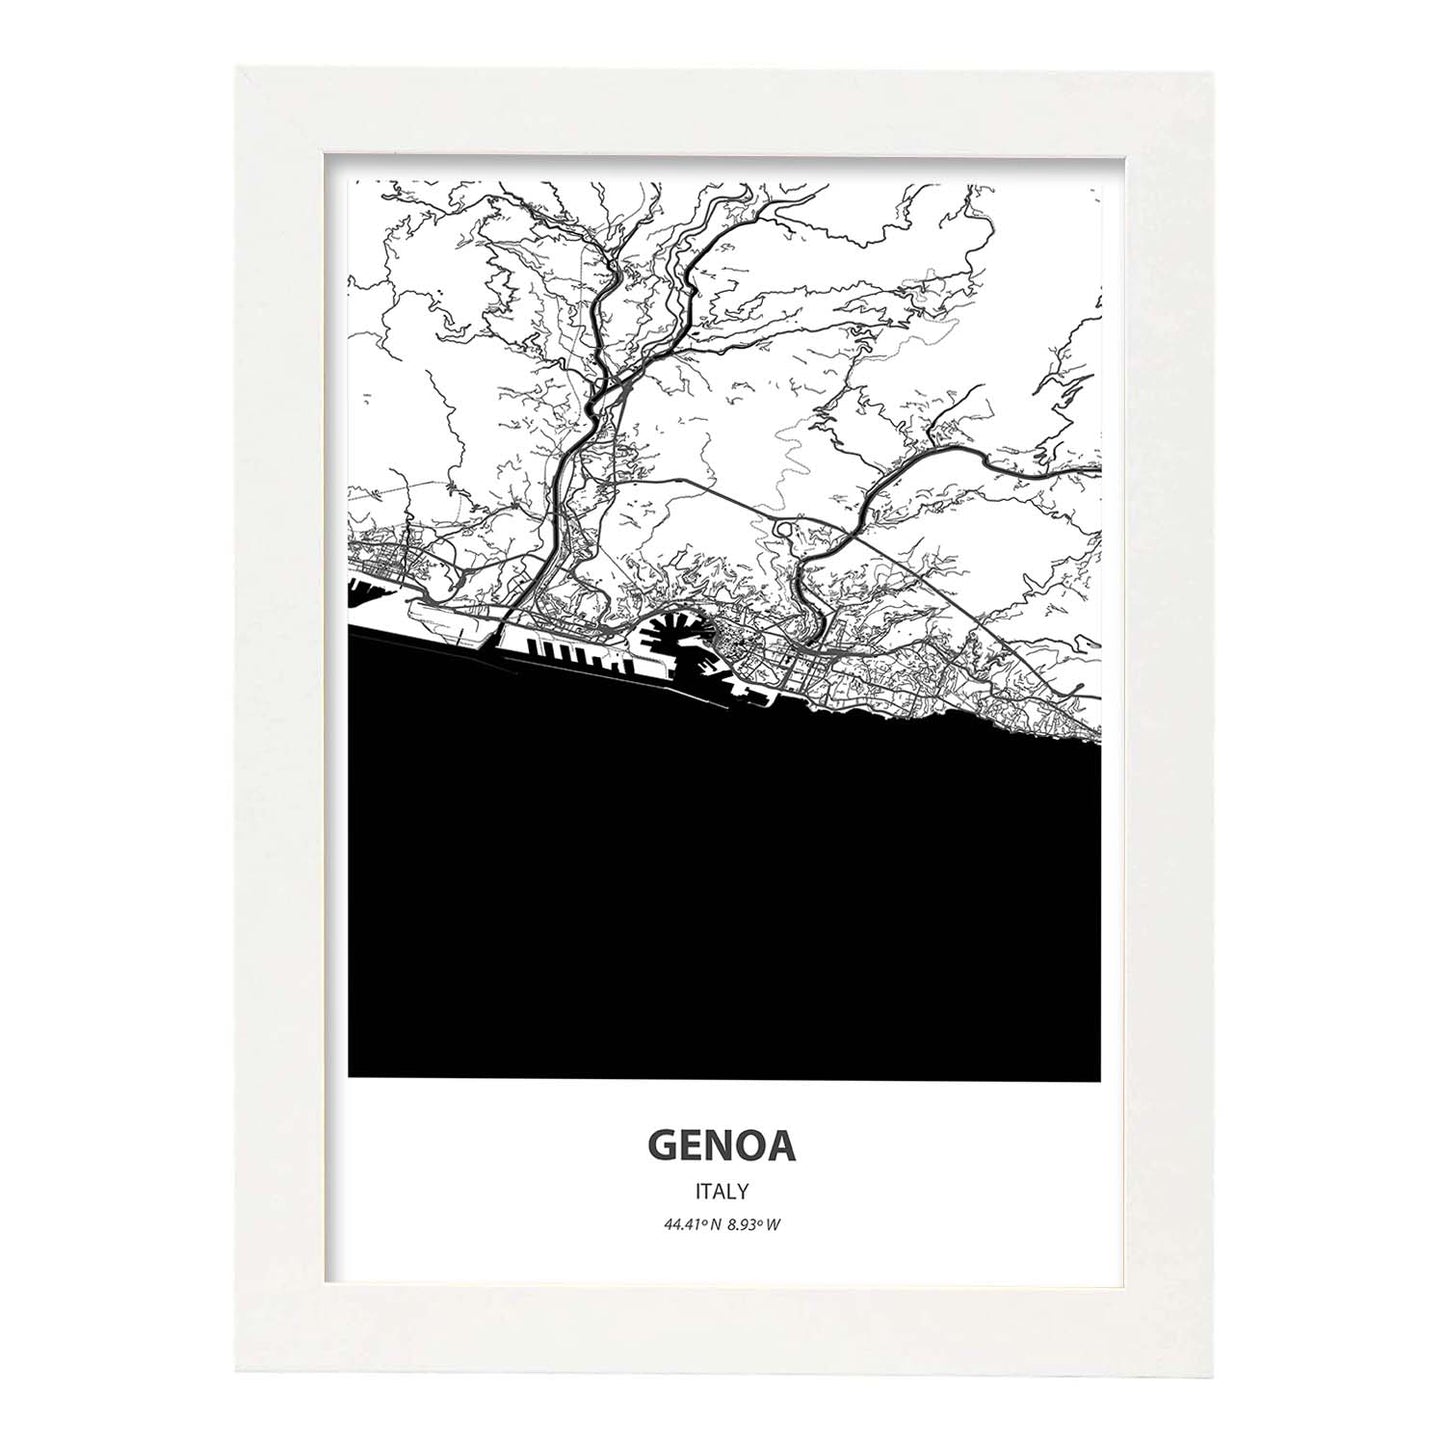 Poster con mapa de Genoa - Italia. Láminas de ciudades de Italia con mares y ríos en color negro.-Artwork-Nacnic-A4-Marco Blanco-Nacnic Estudio SL